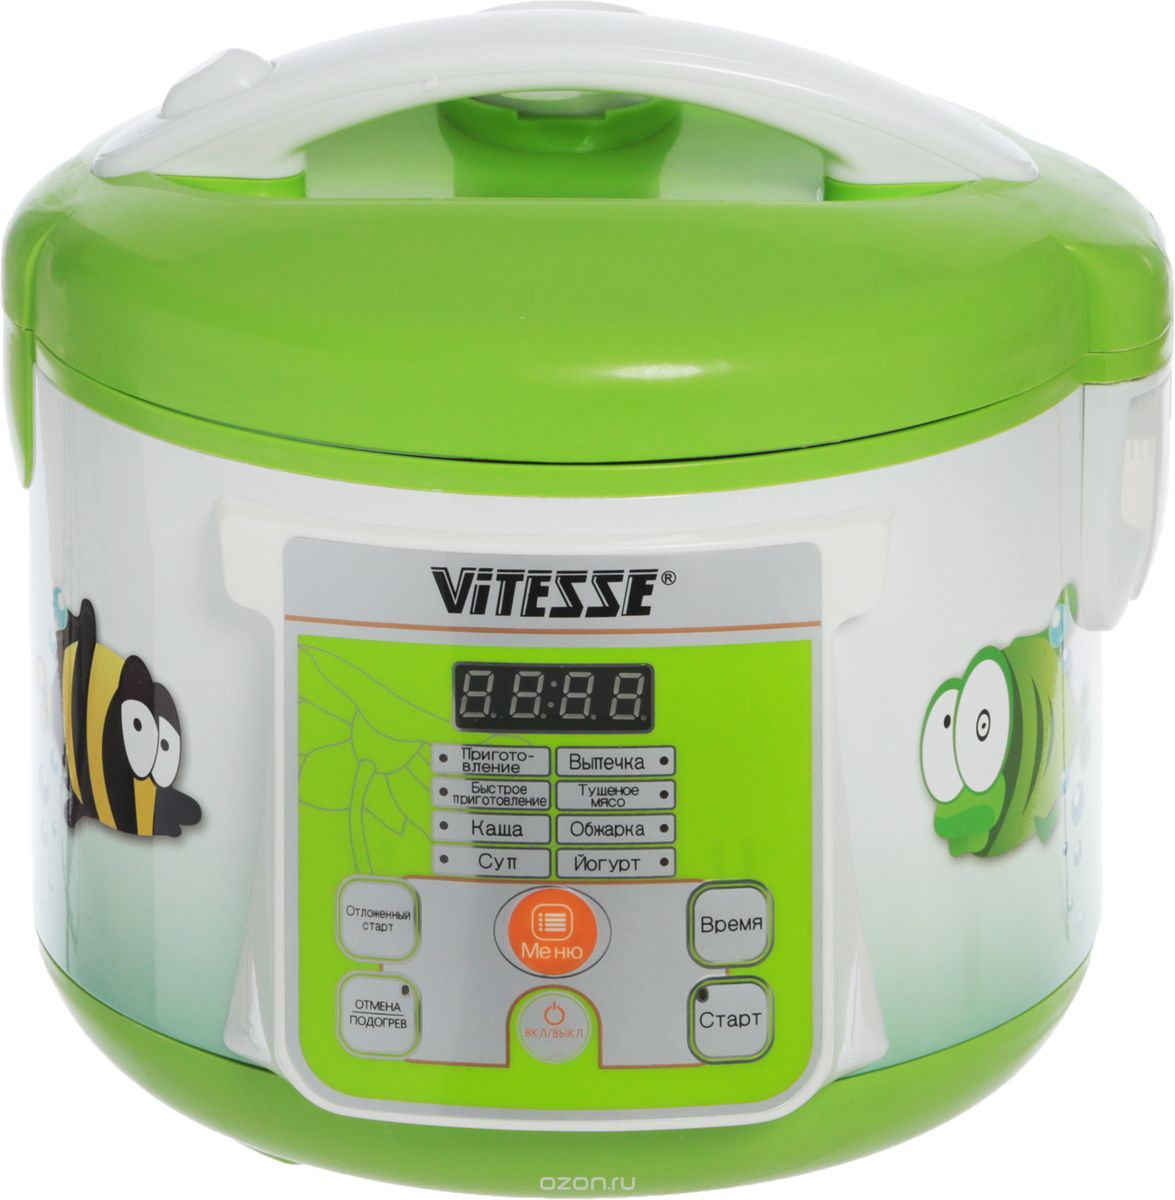  Vitesse VS-585, Light Green